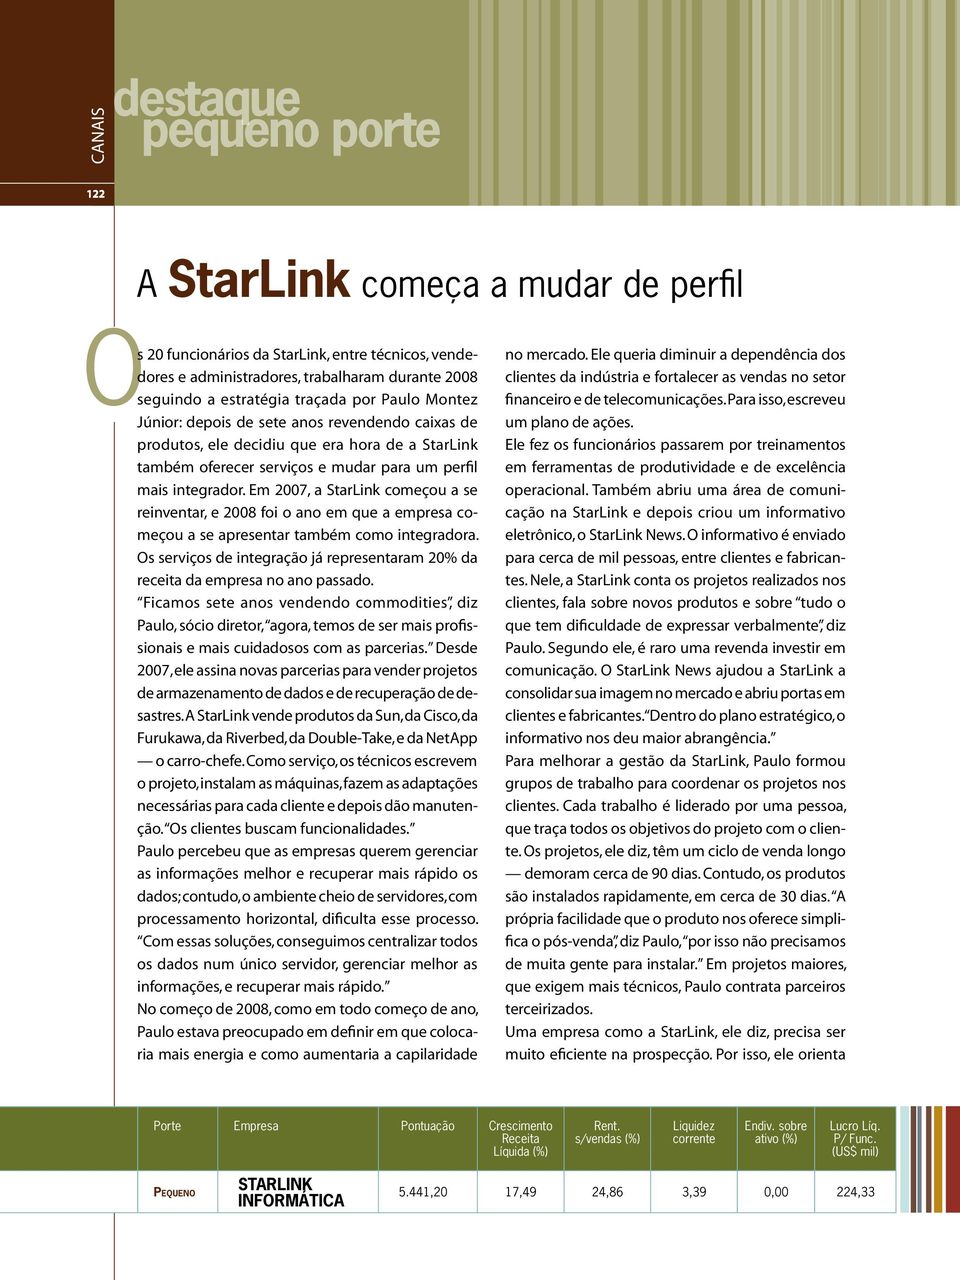 Em 2007, a StarLink começou a se reinventar, e 2008 foi o ano em que a empresa começou a se apresentar também como integradora.